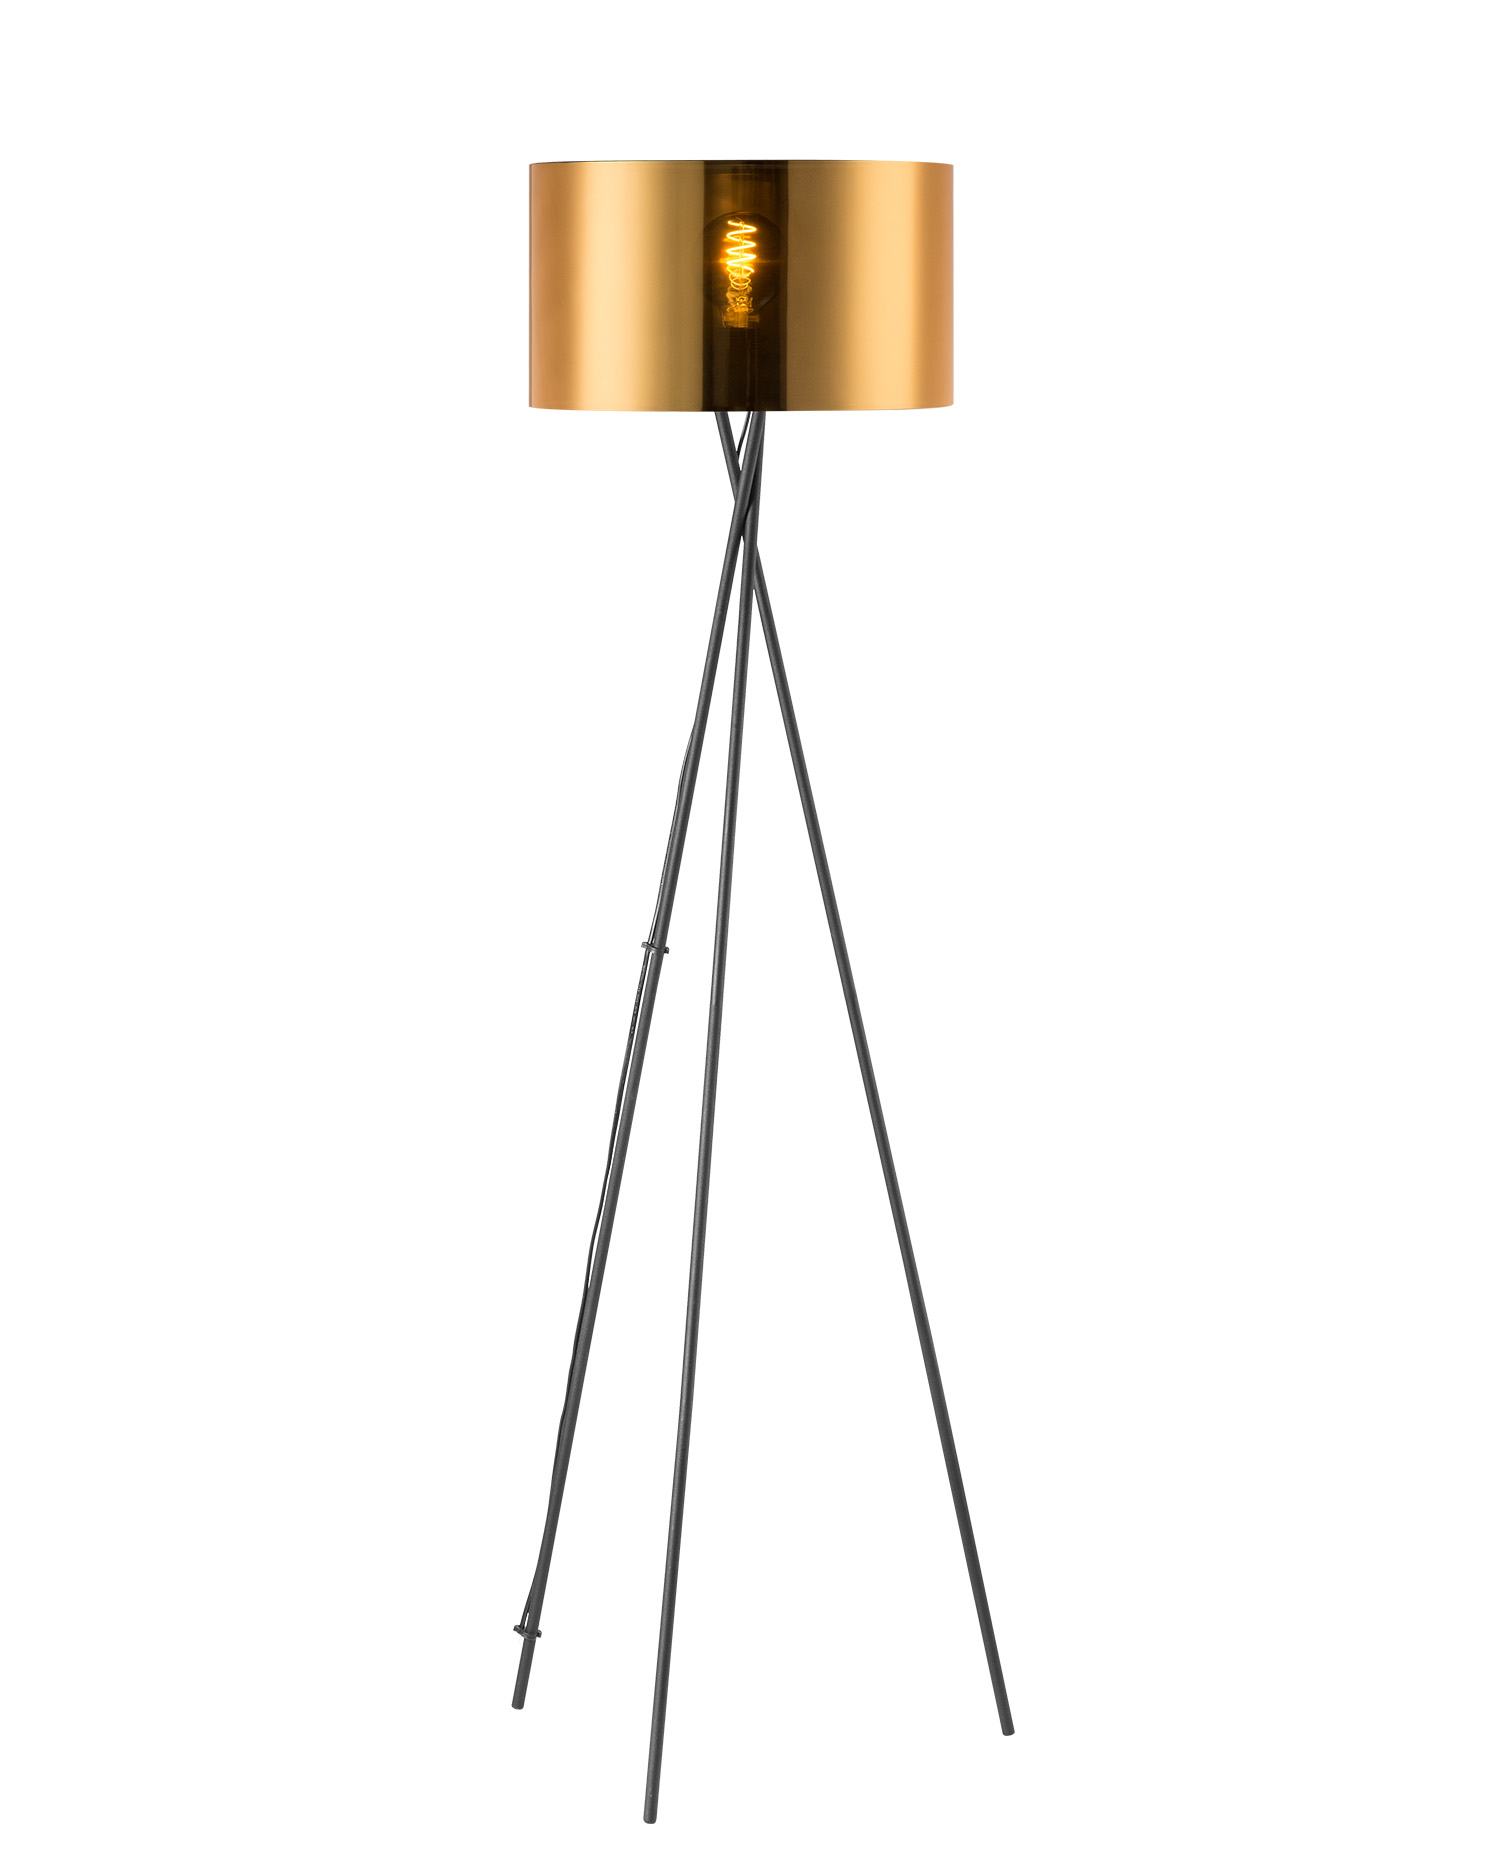 Tangla lighting - TLF7399-01BG - LED Floor lamp 1 Light - metal + pvc - sand black + gold - cross tripod - E27